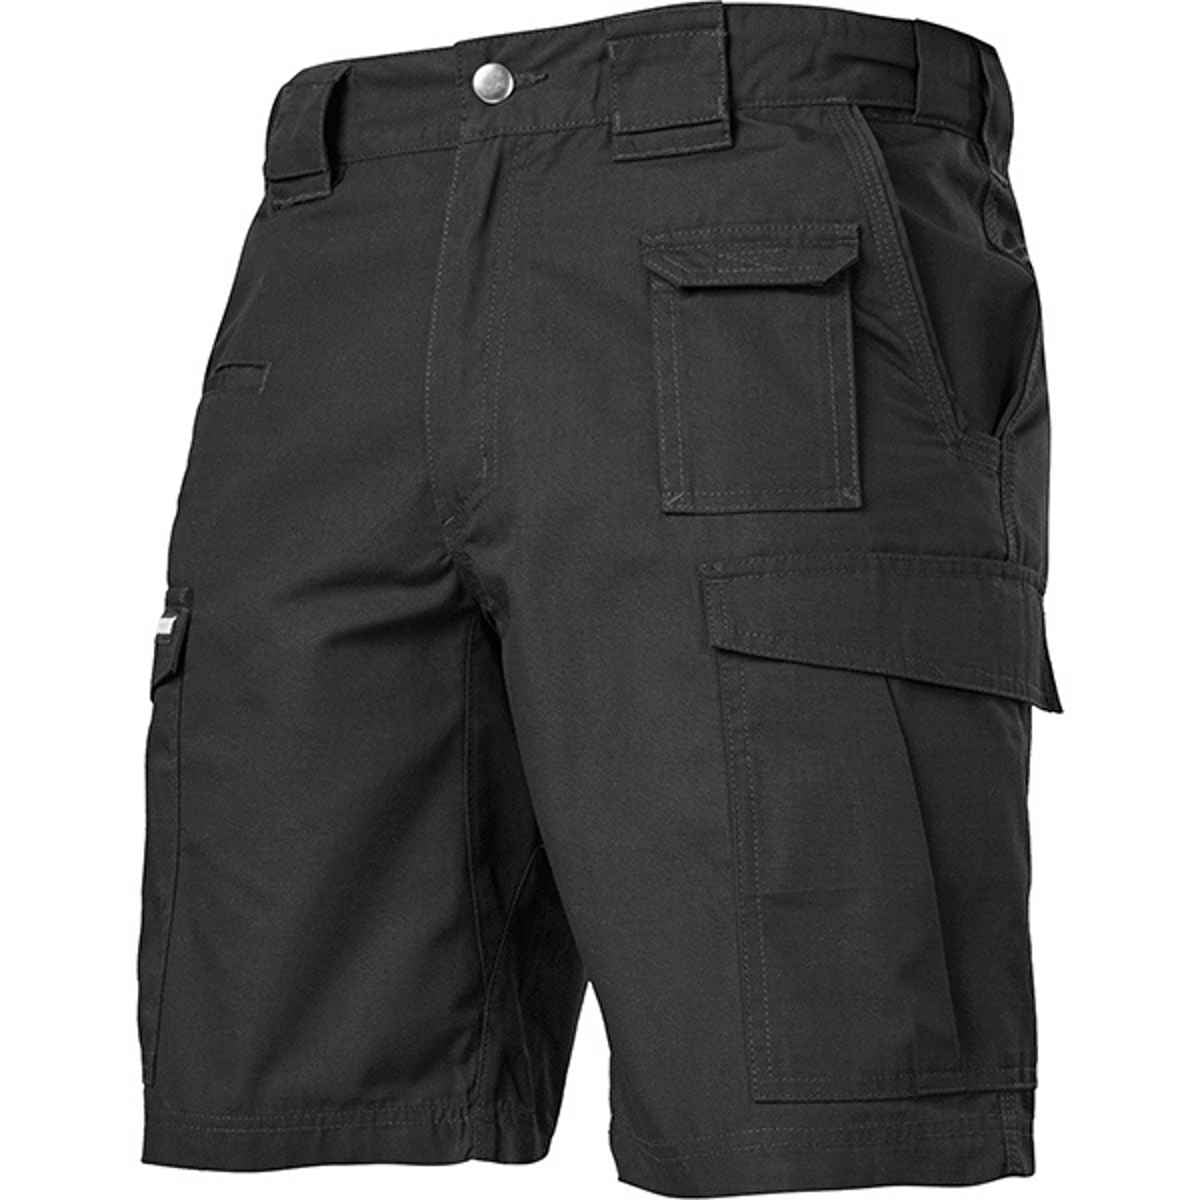 Blackhawk - Blackhawk Tactical Pursuit Shorts Black Size 38 - Walmart ...